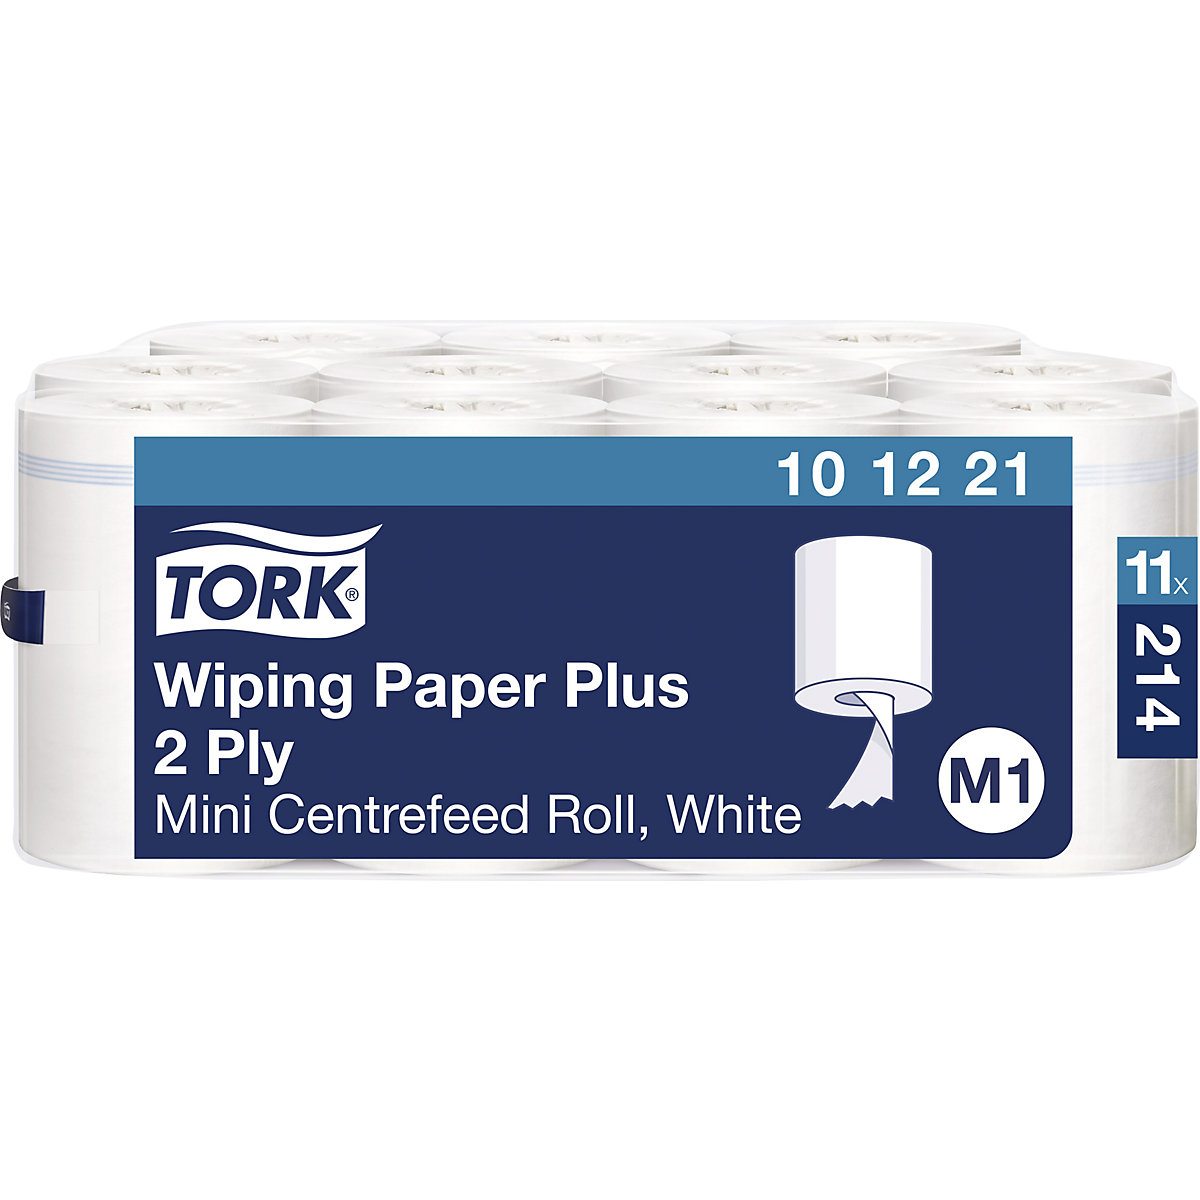 Serviettes papier robustes multi-usages mini à déroulement interne – TORK, 2 plis, blanc, lot de 11 rouleaux, prédécoupé